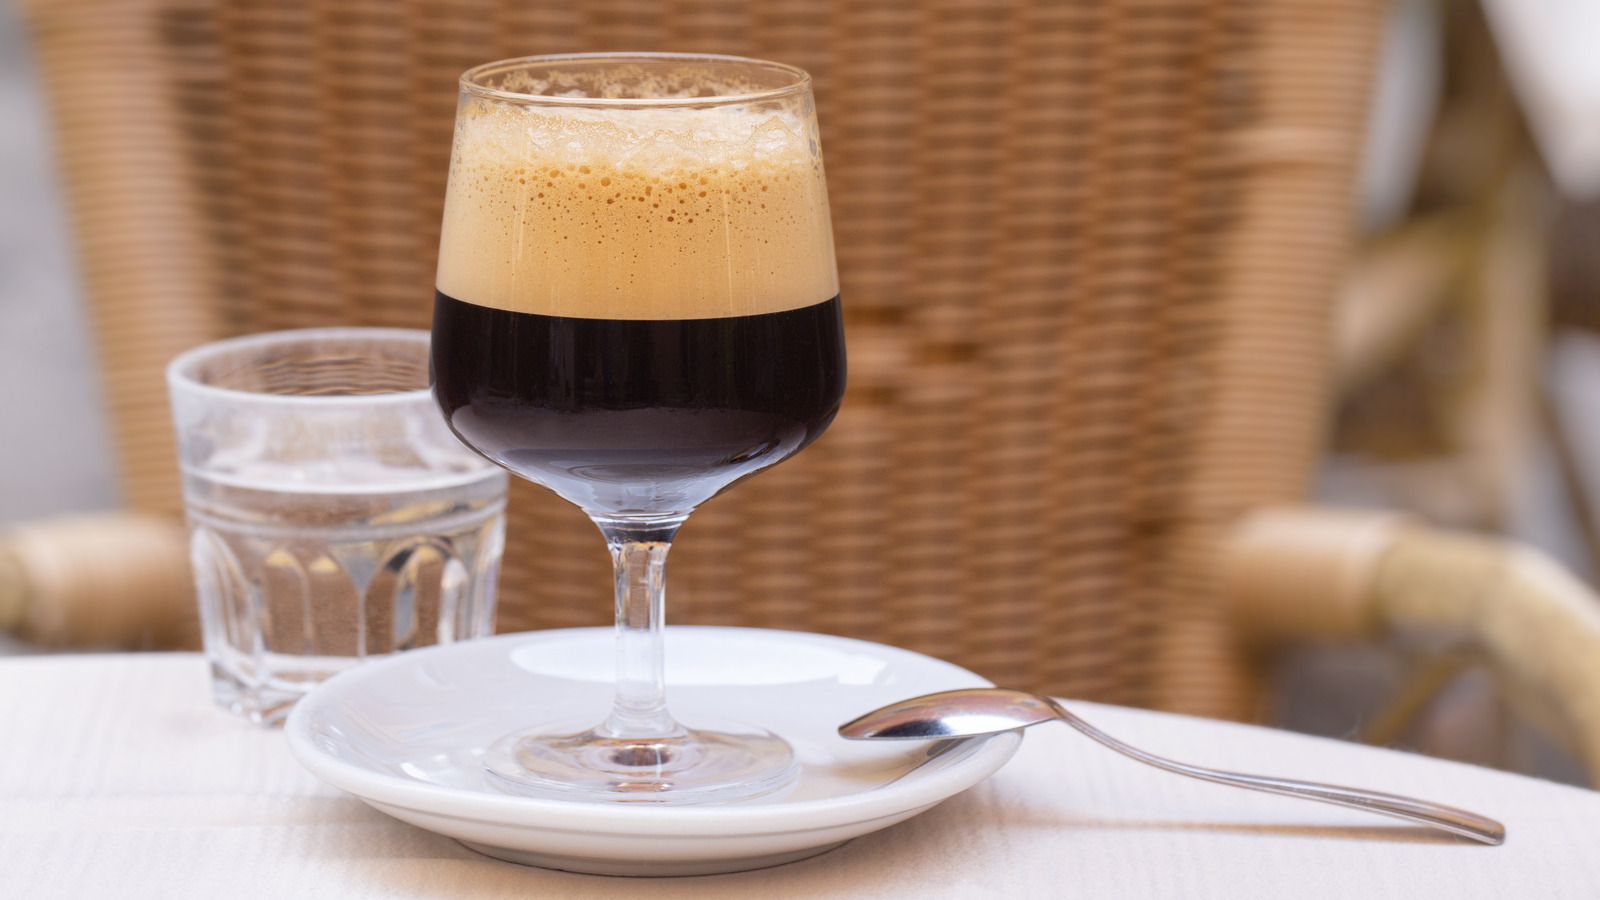 Шакерато: итальянский стиль кофе со льдом, который нельзя пропустить